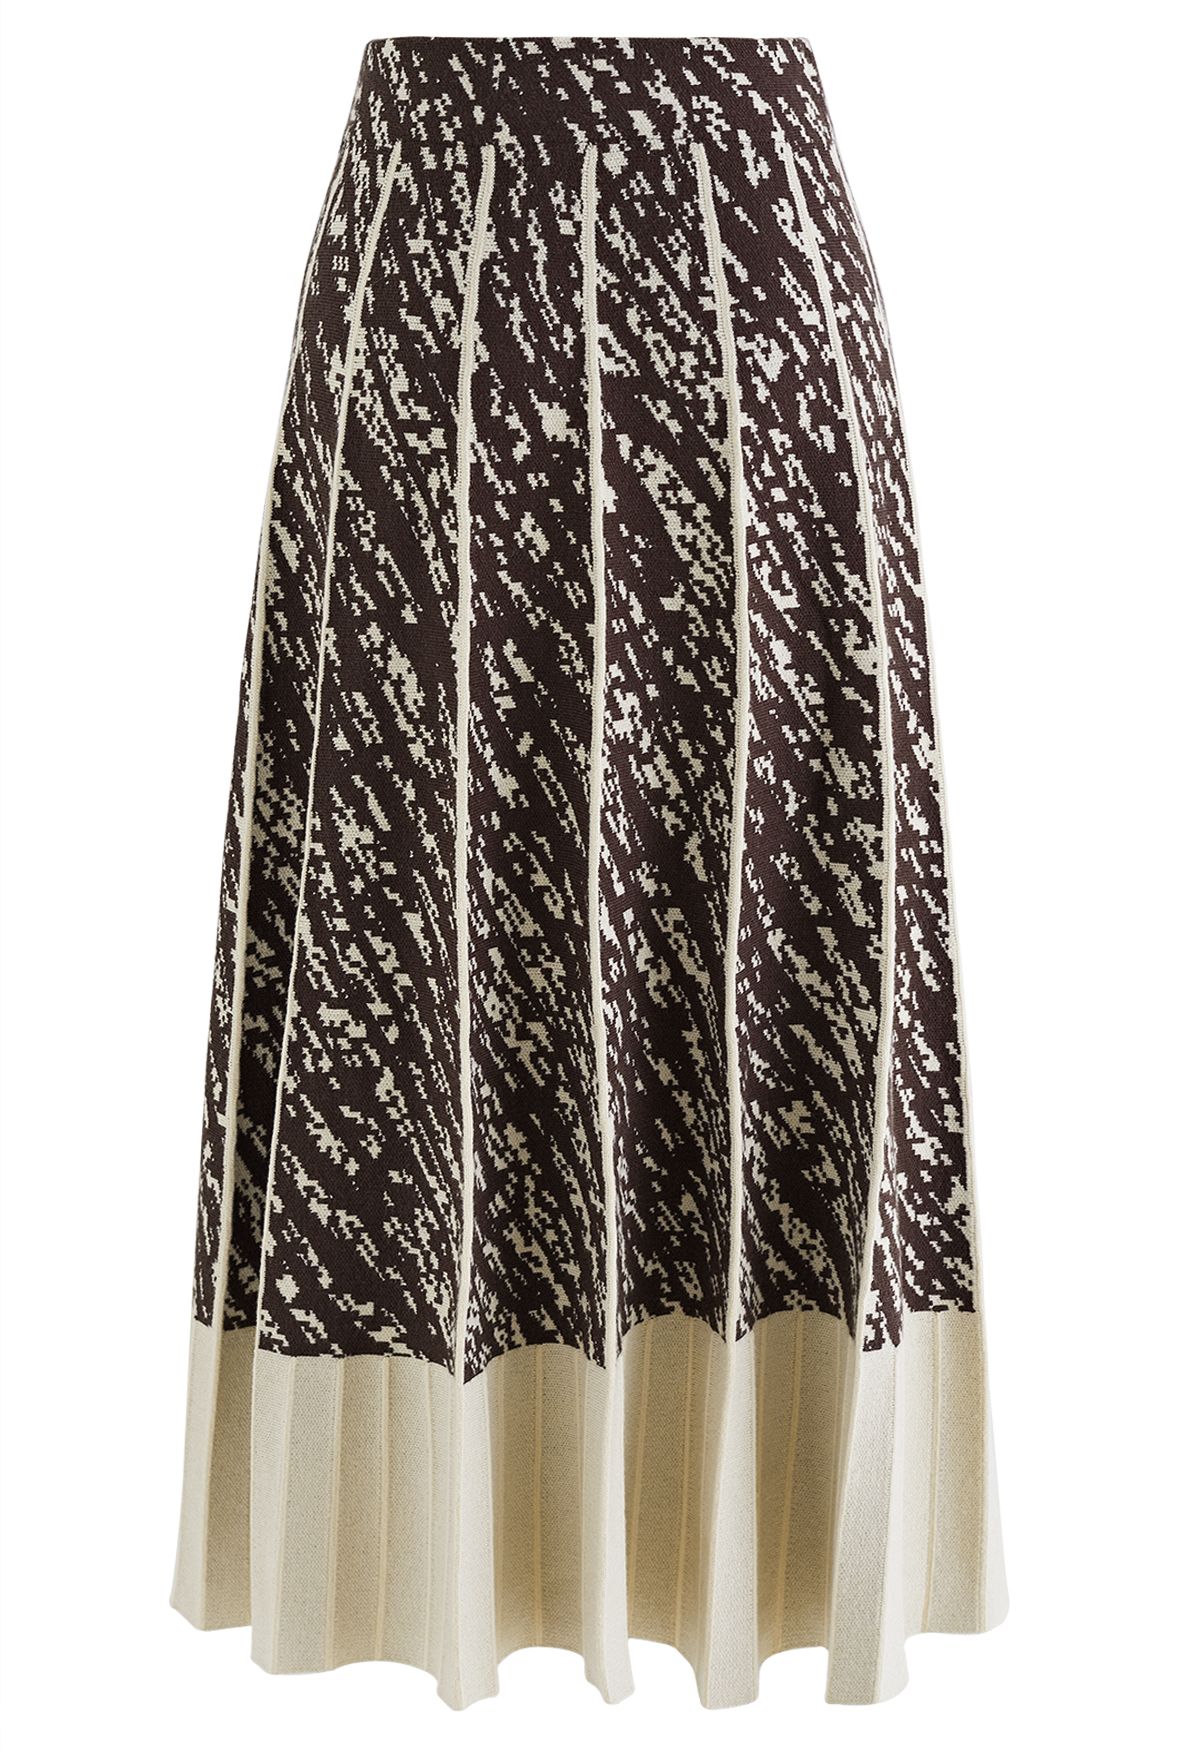 Falda de punto plisada con dobladillo en contraste en color crema